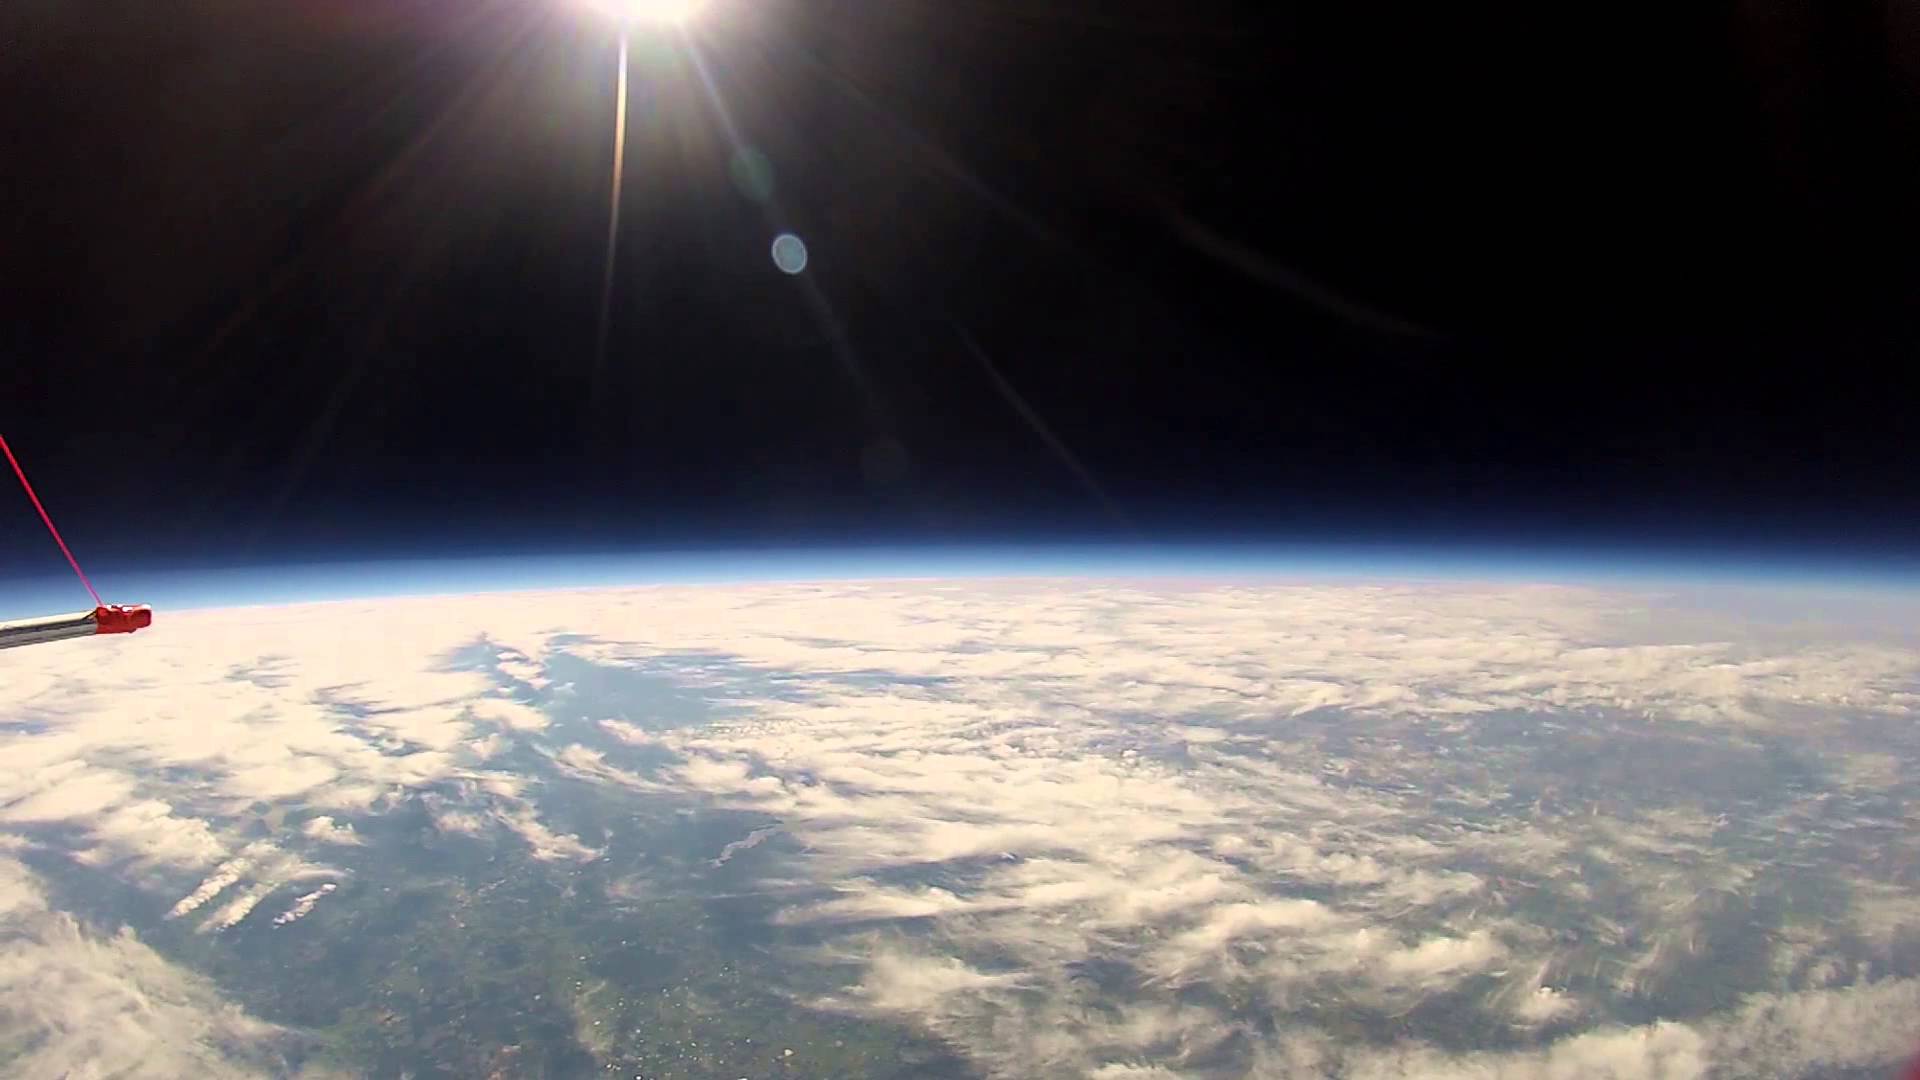 Texas A&M High Altitude Balloon Flight 4/13/13 - YouTube